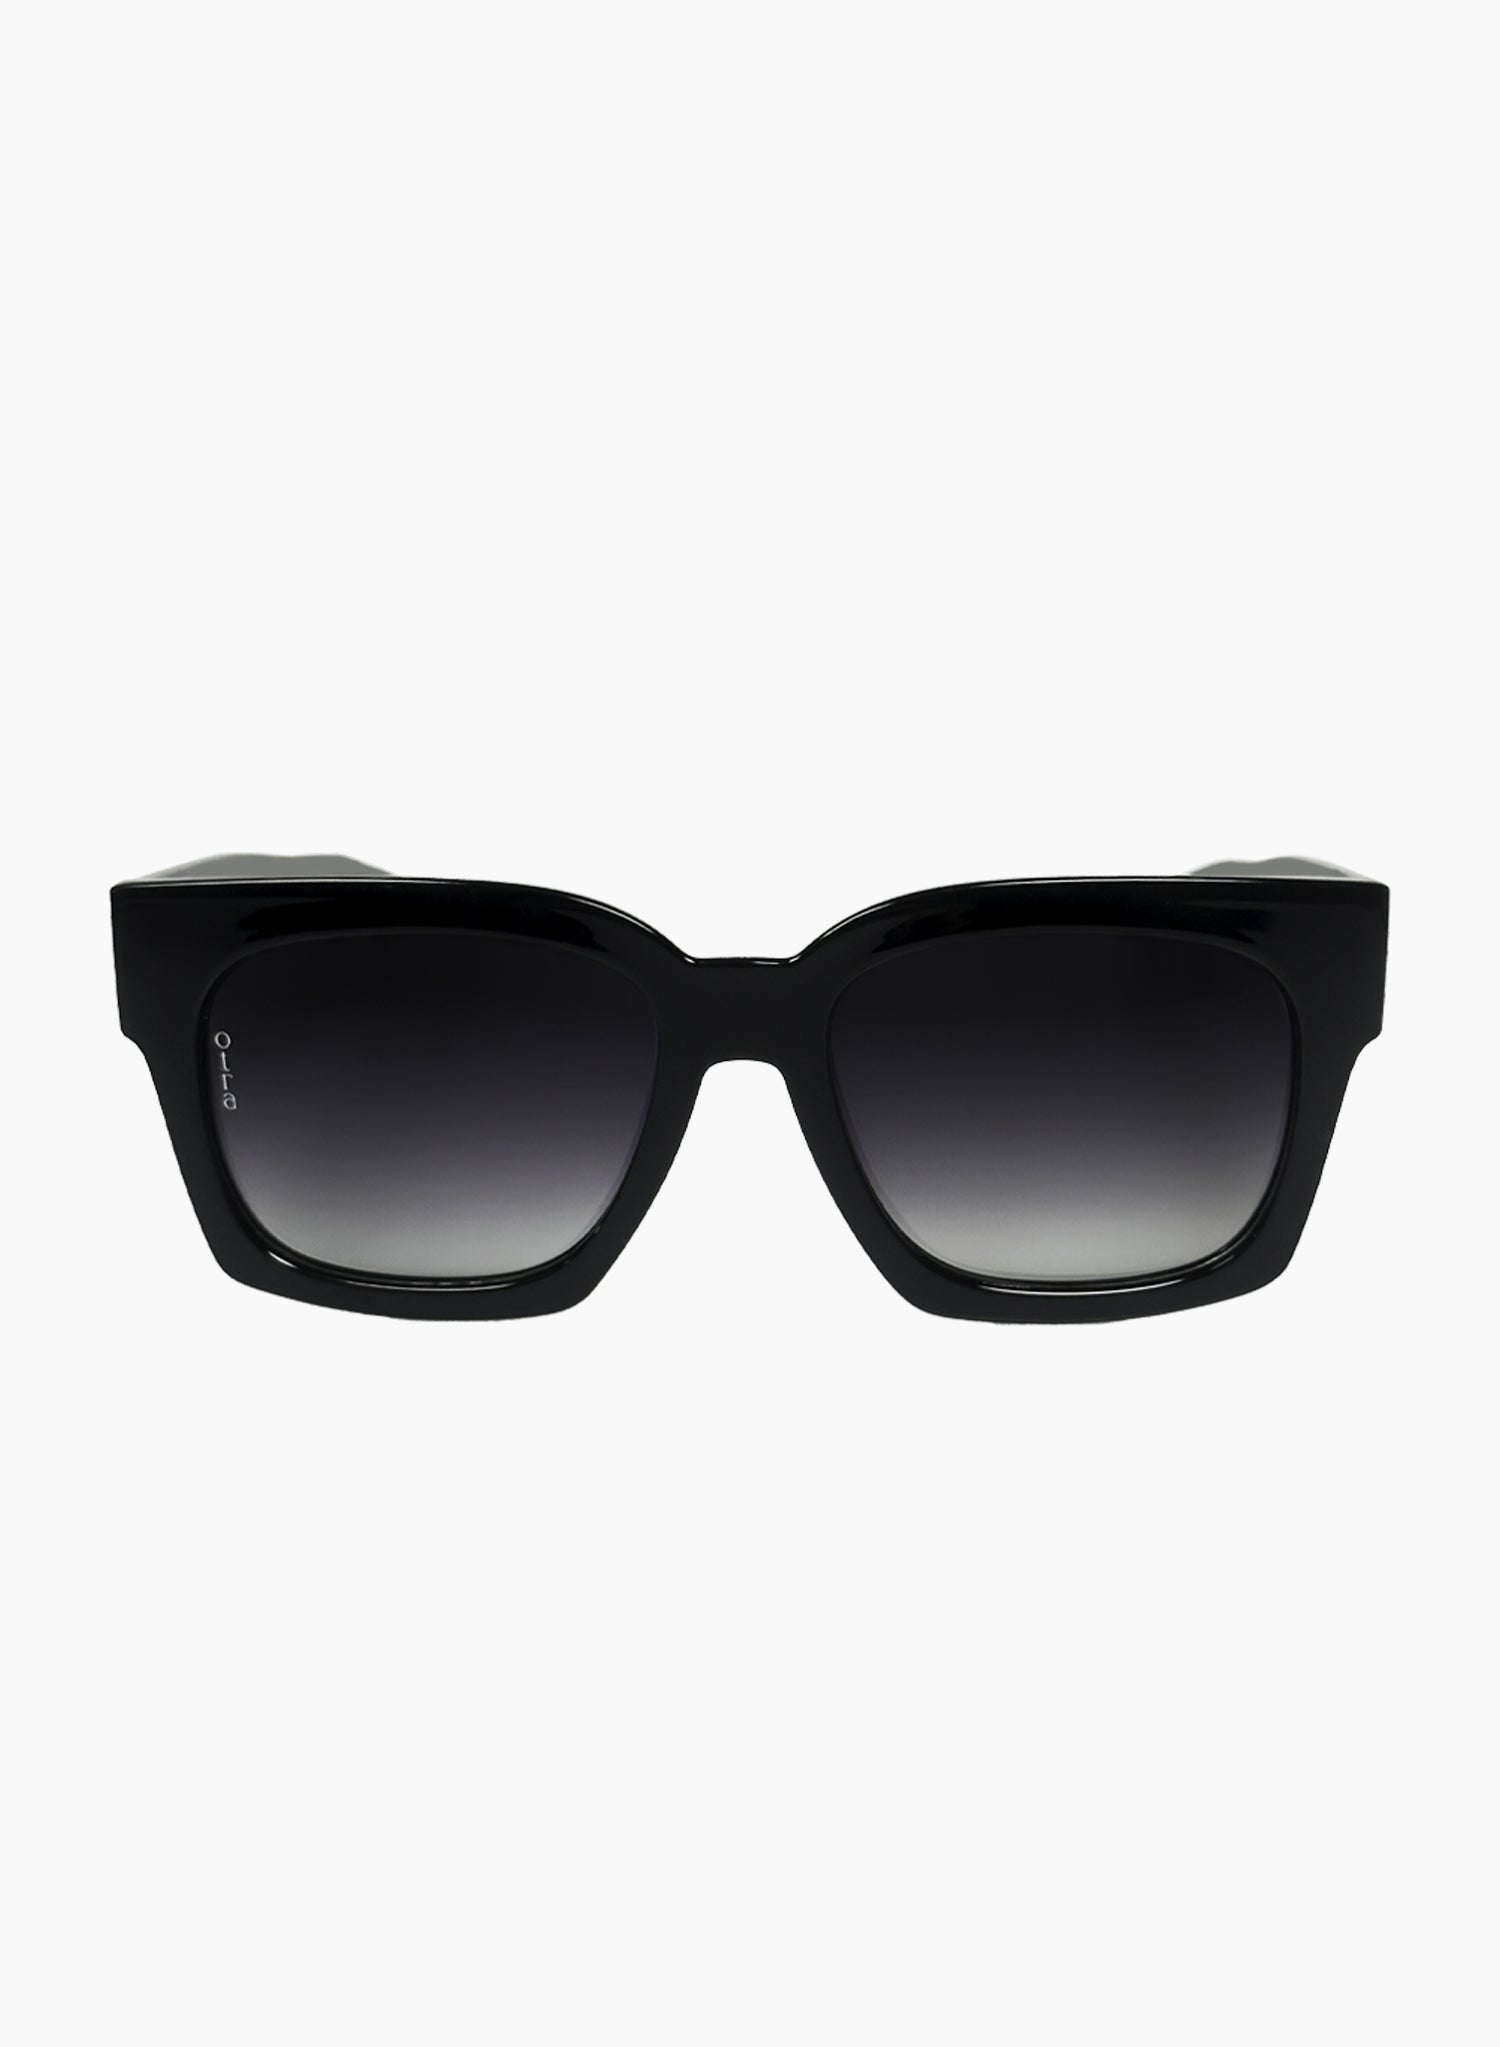 Alba square oversized glasses in black